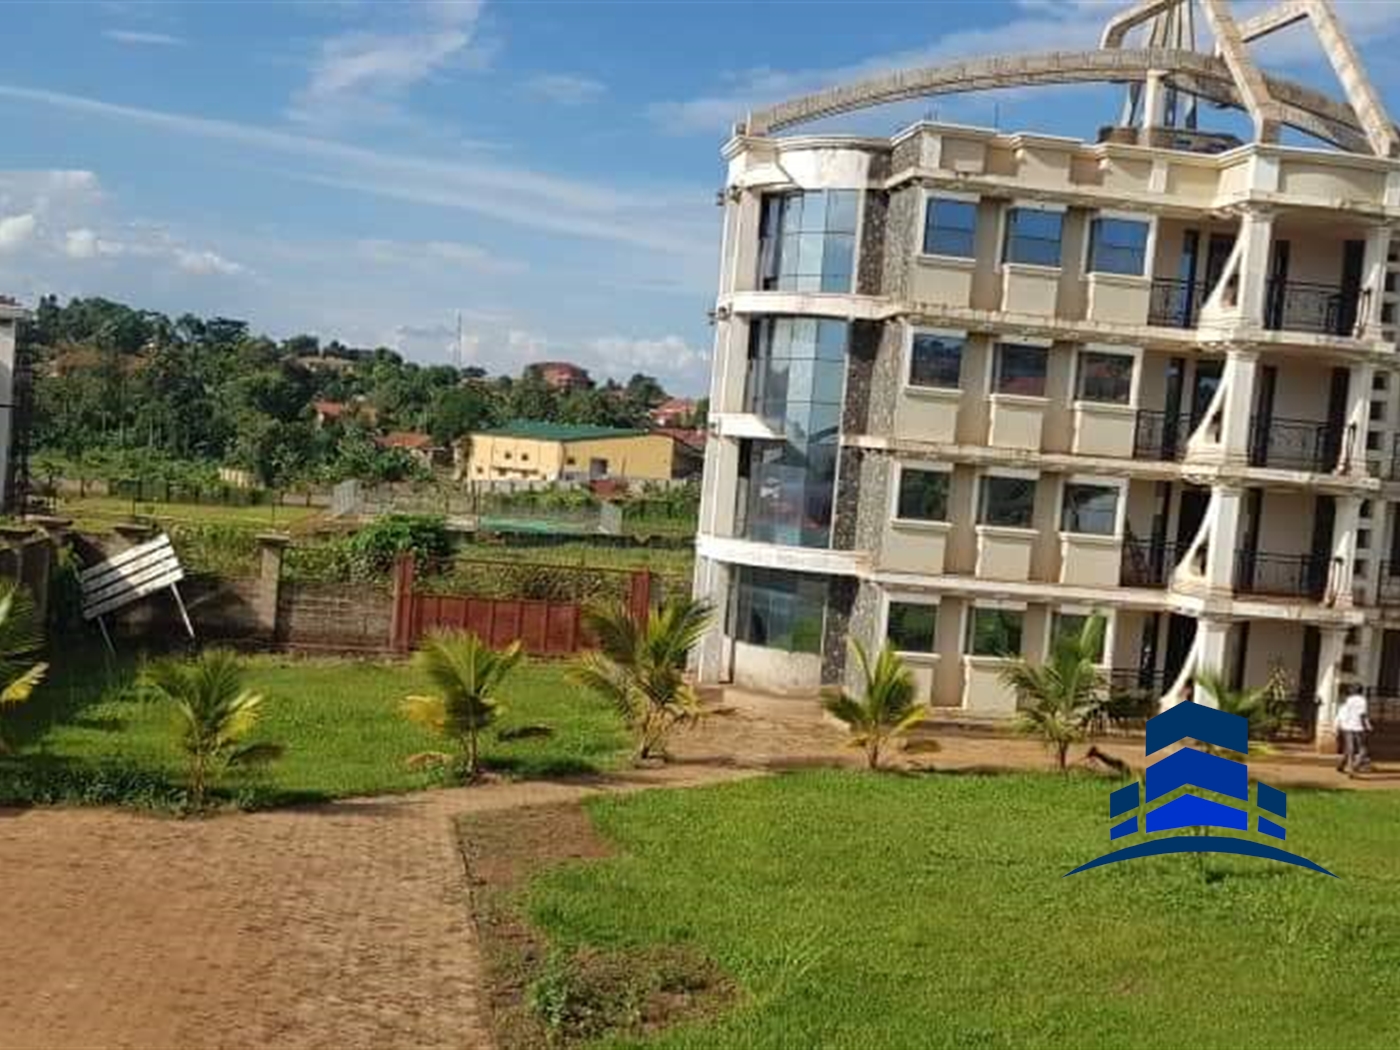 Apartment block for sale in Namanve Mukono